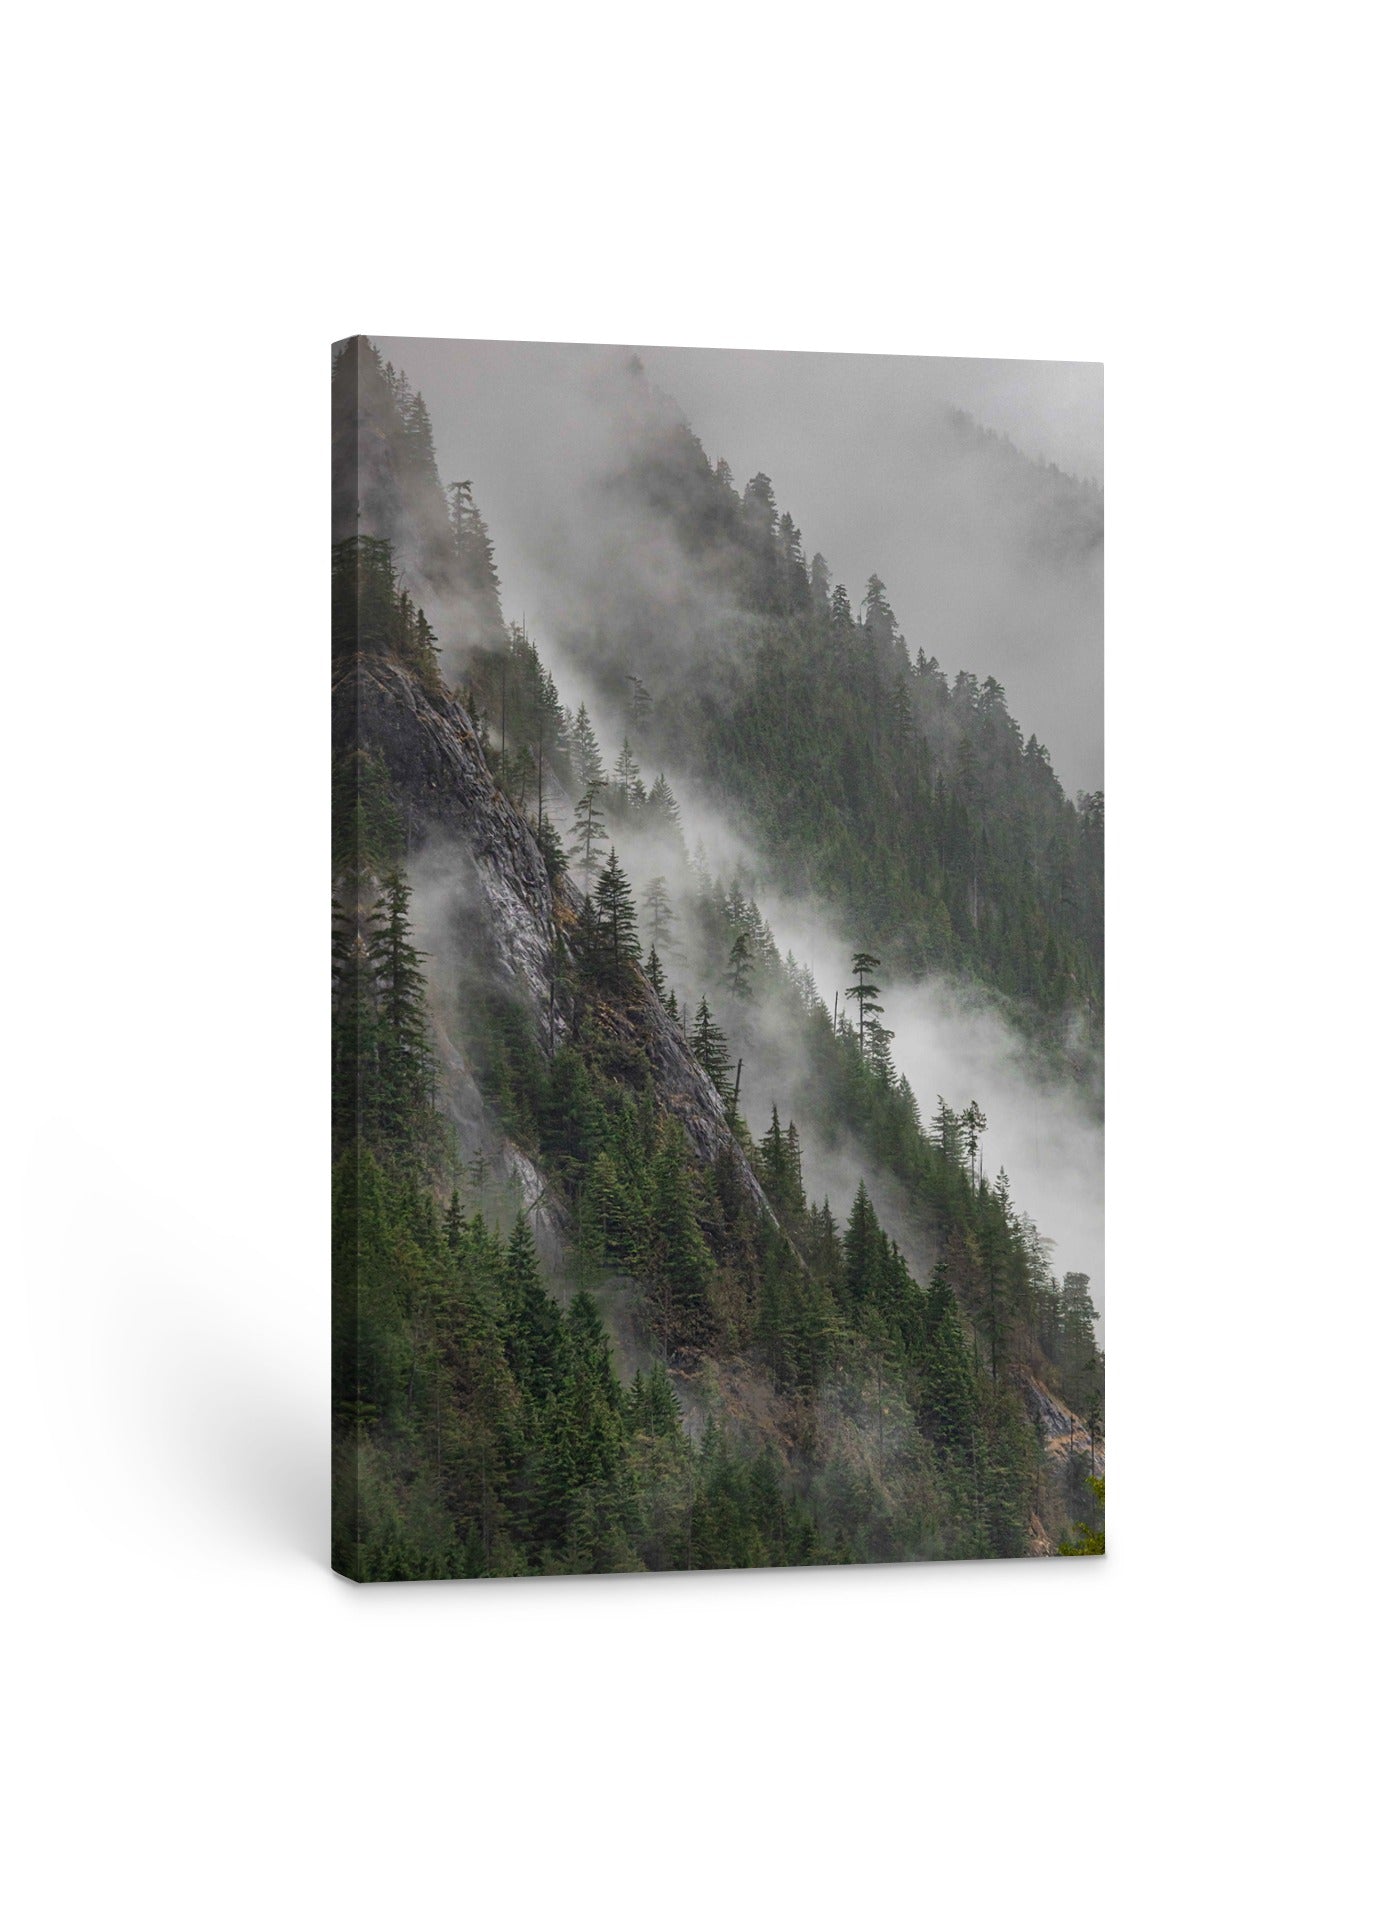 Mist on the Mountain 24x36"